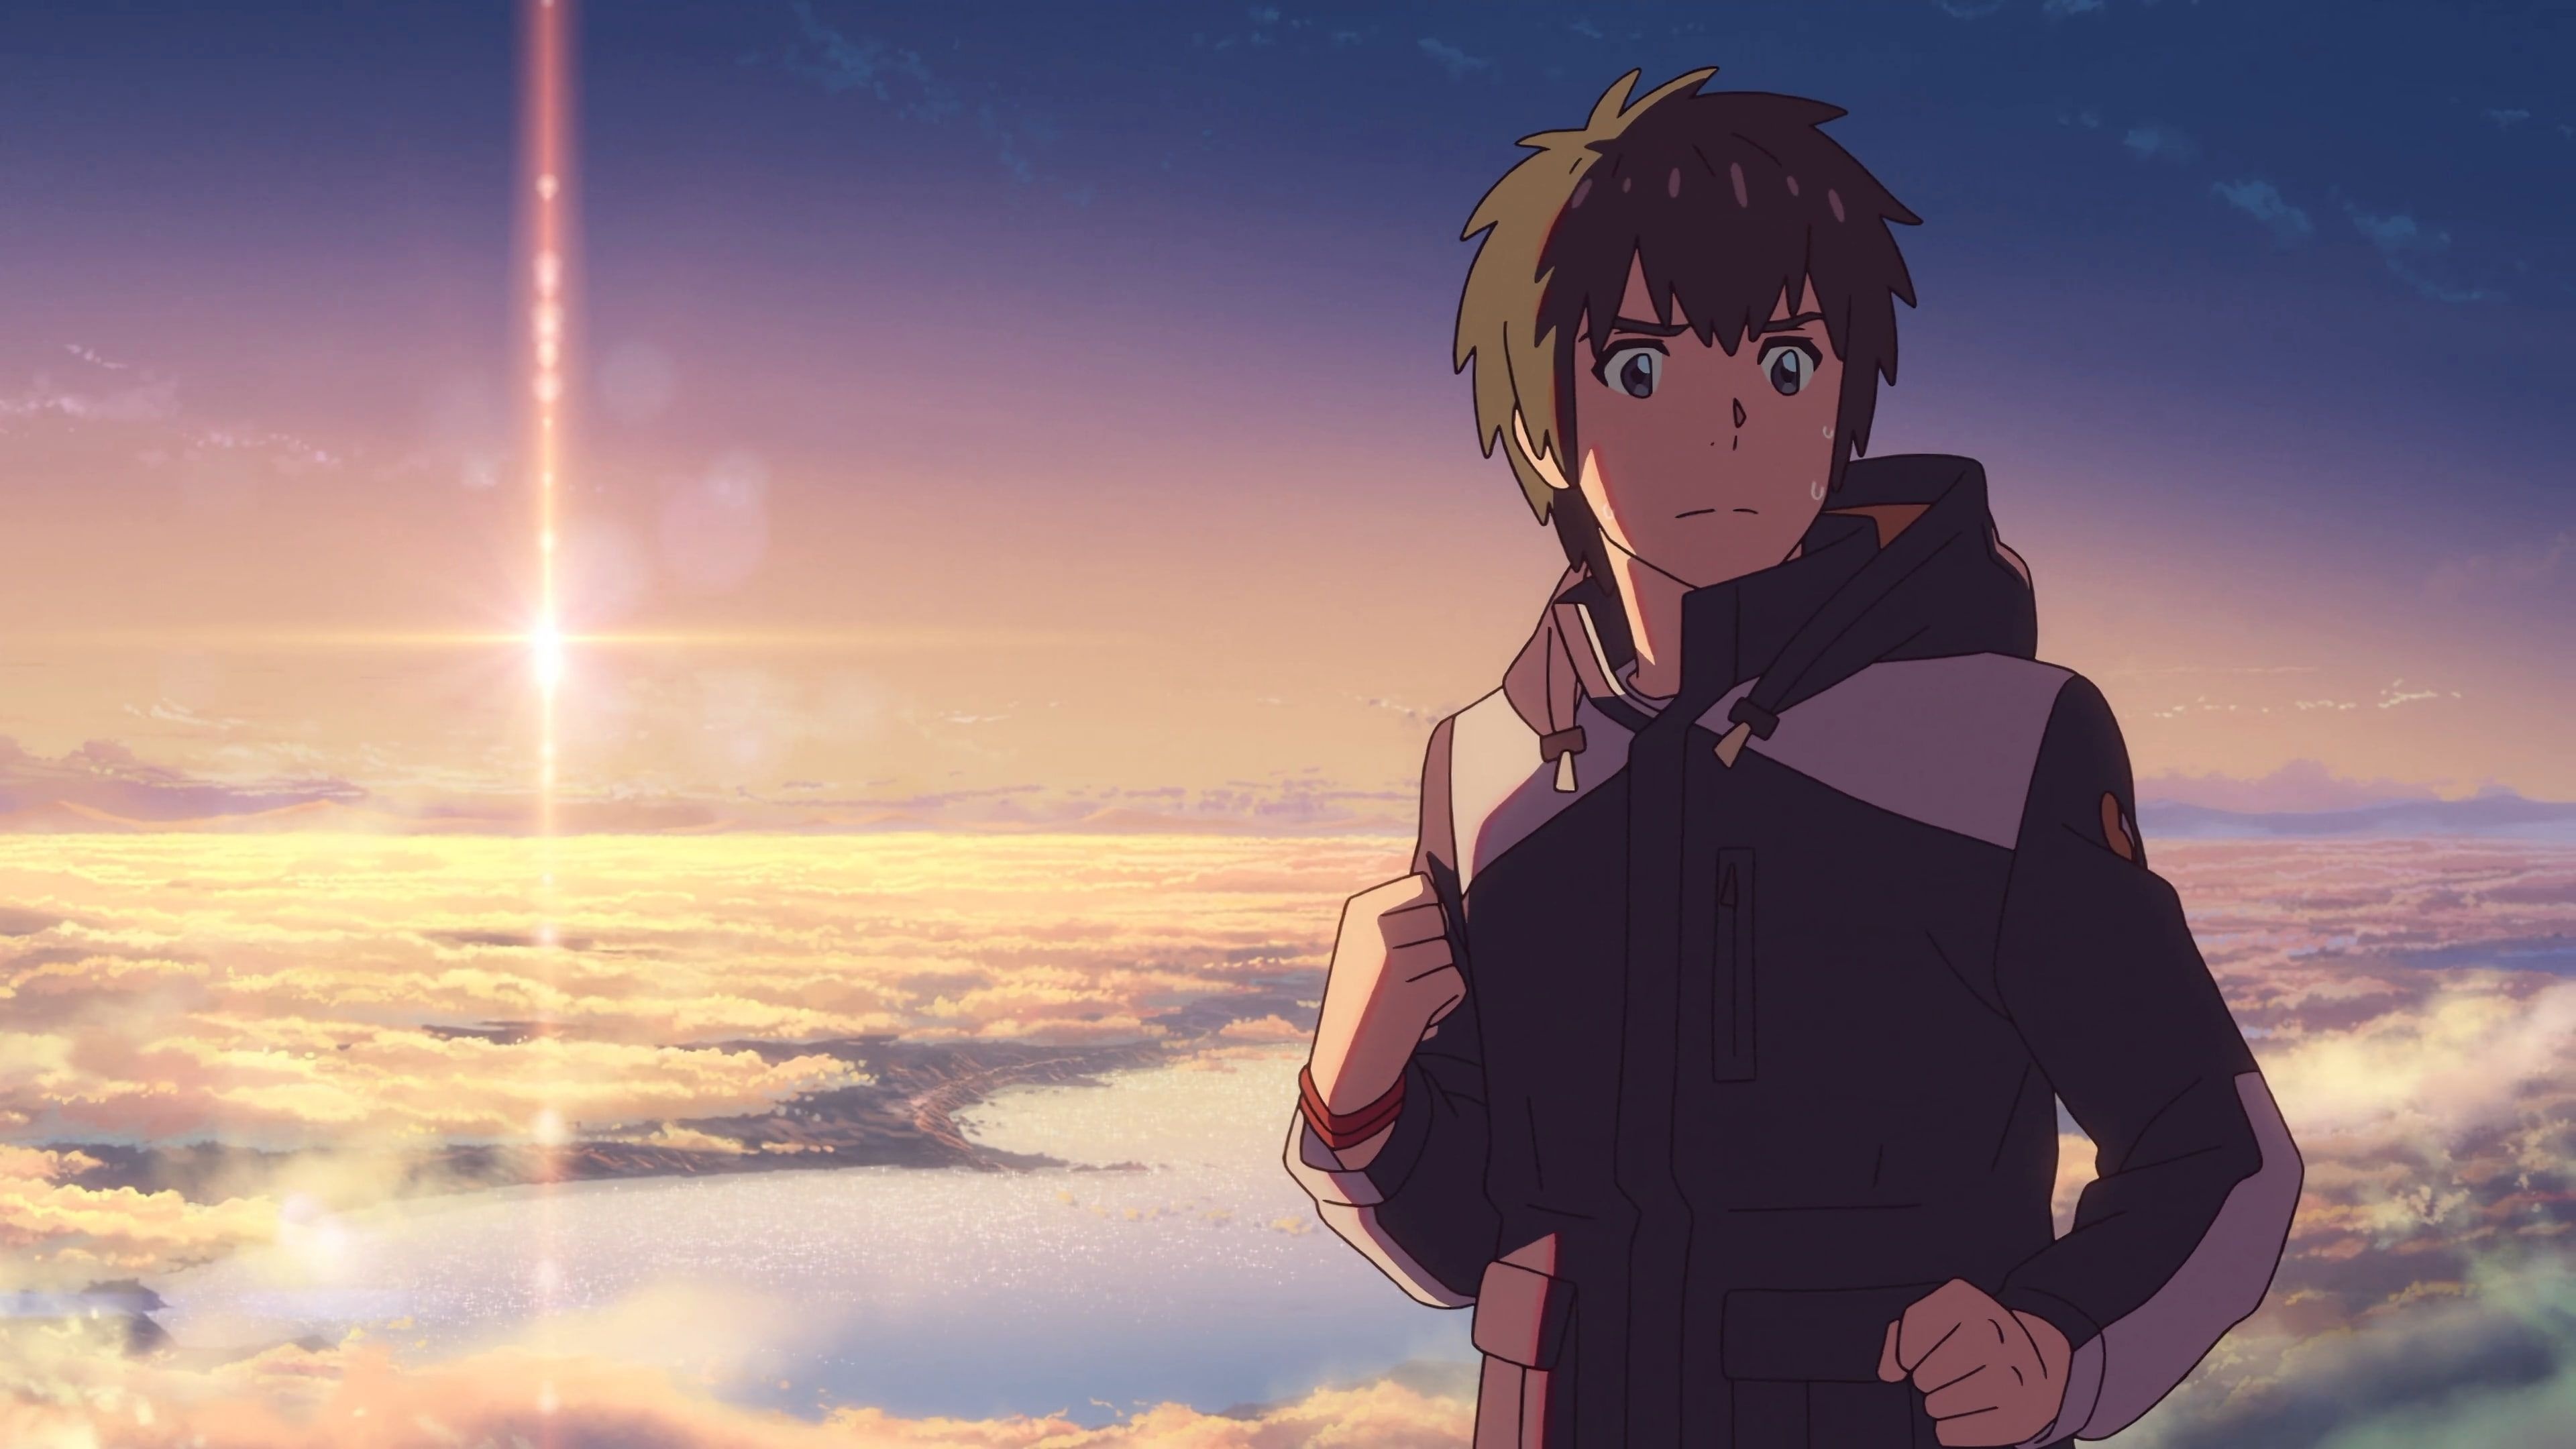 Makoto Shinkai Anime, Kimi no Na wa, Anime Boys, 3840x2160 4K Desktop